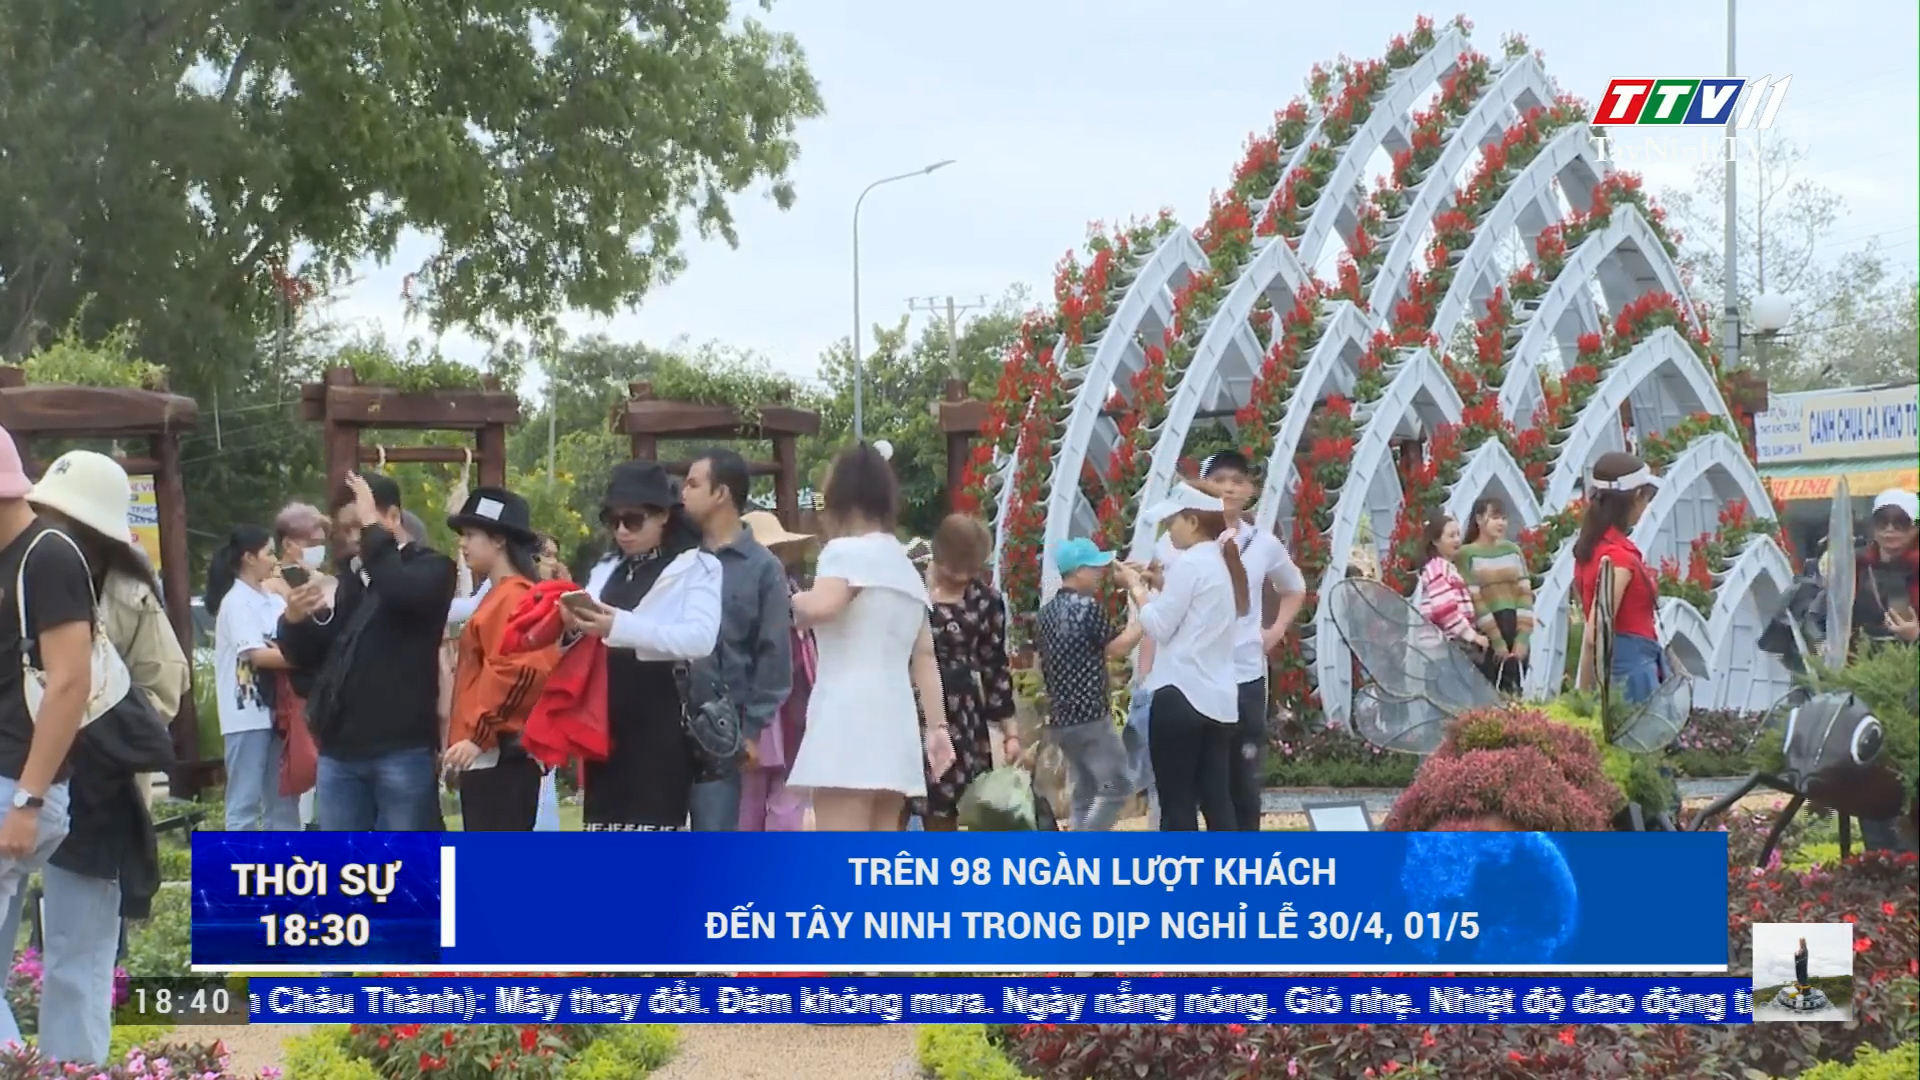 Trên 98 ngàn lượt khách đến Tây Ninh trong dịp nghỉ lễ 30/4, 01/5 | TayNinhTV